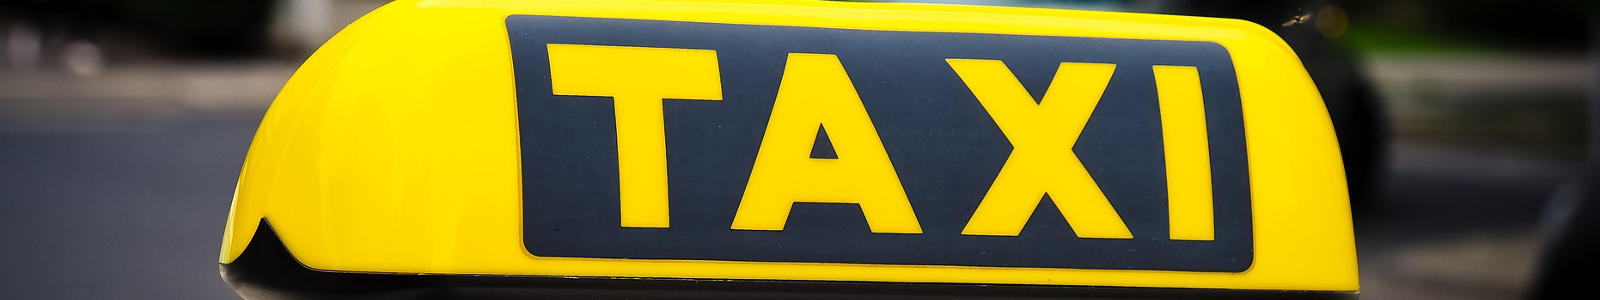 taxi, logo taxi, takswka